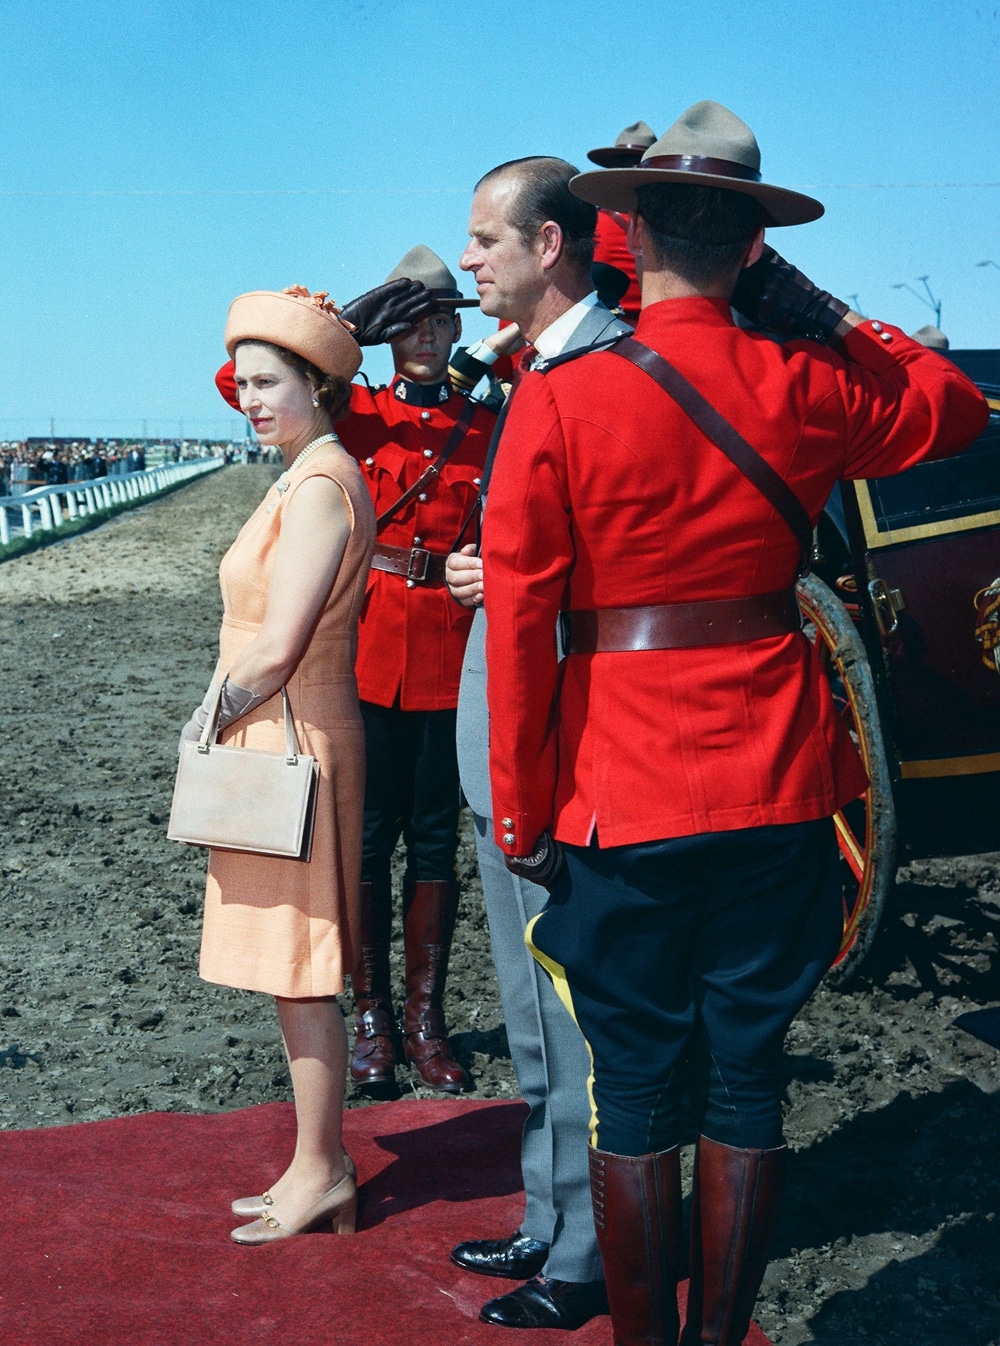 Her Majesty Queen Elizabeth at the 1970 Manitoba Centenniel Derby